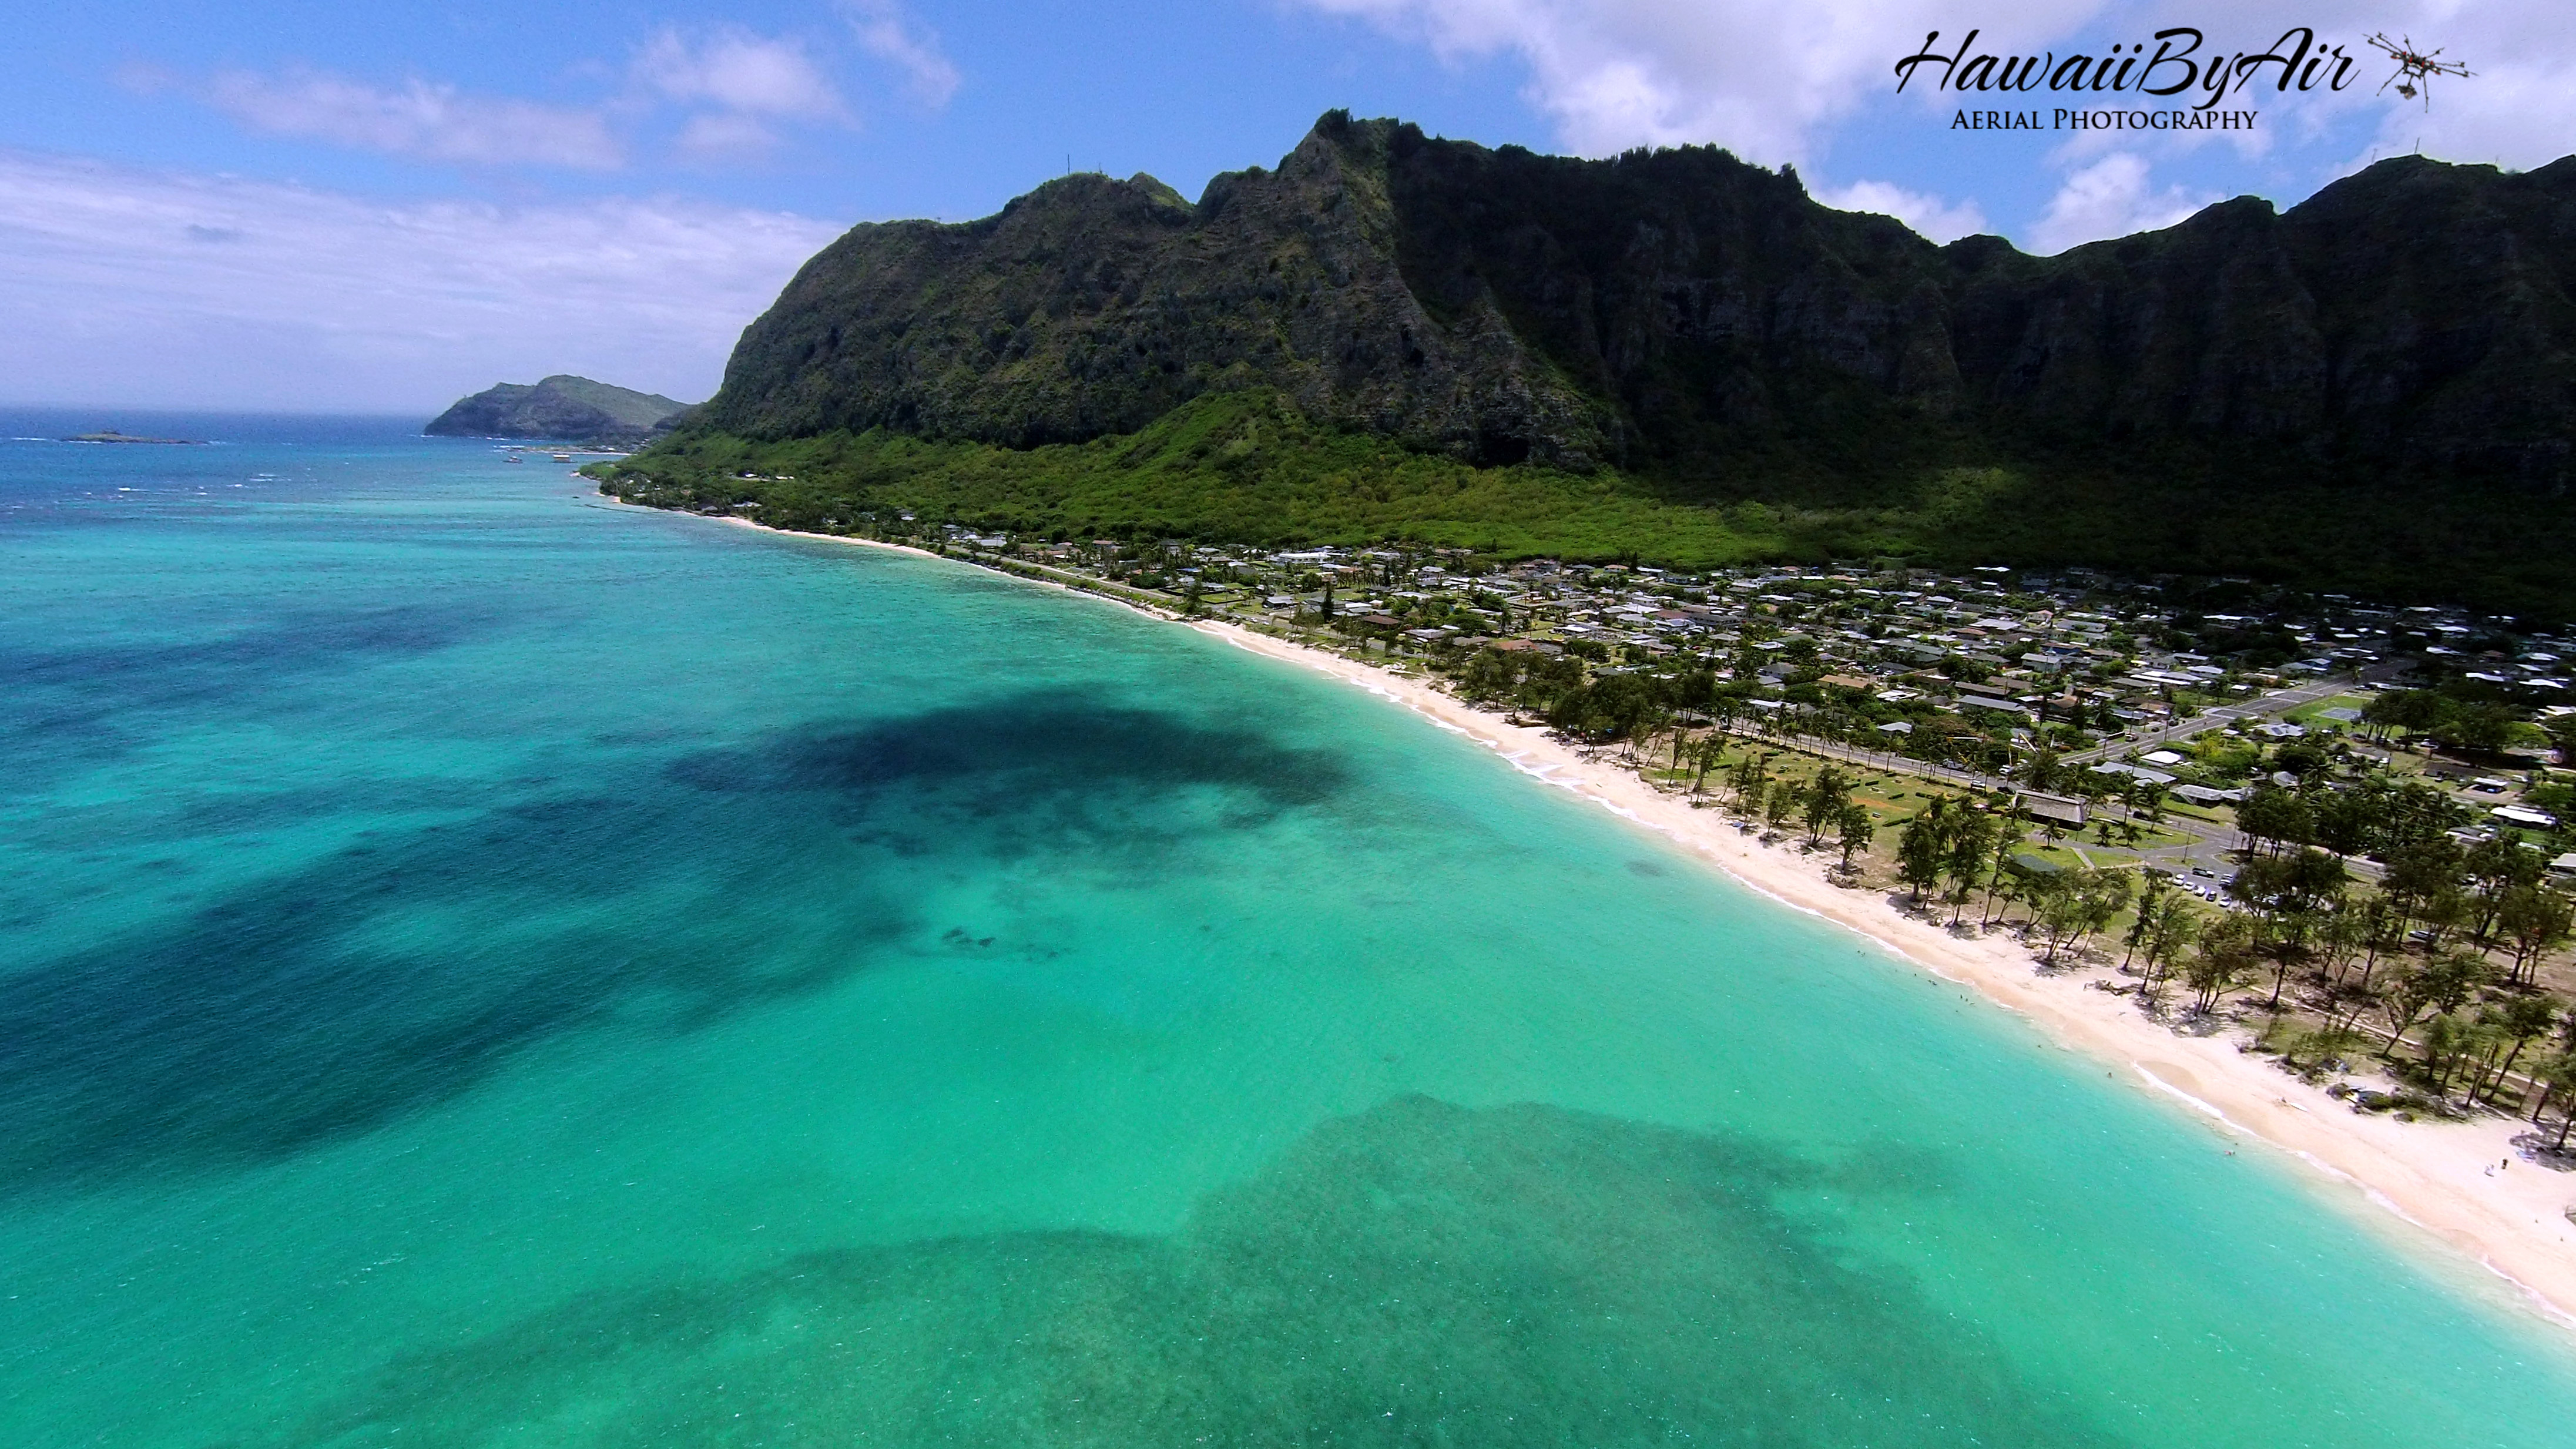 Hawaii Drone Aerial Photography Hawaiibyair